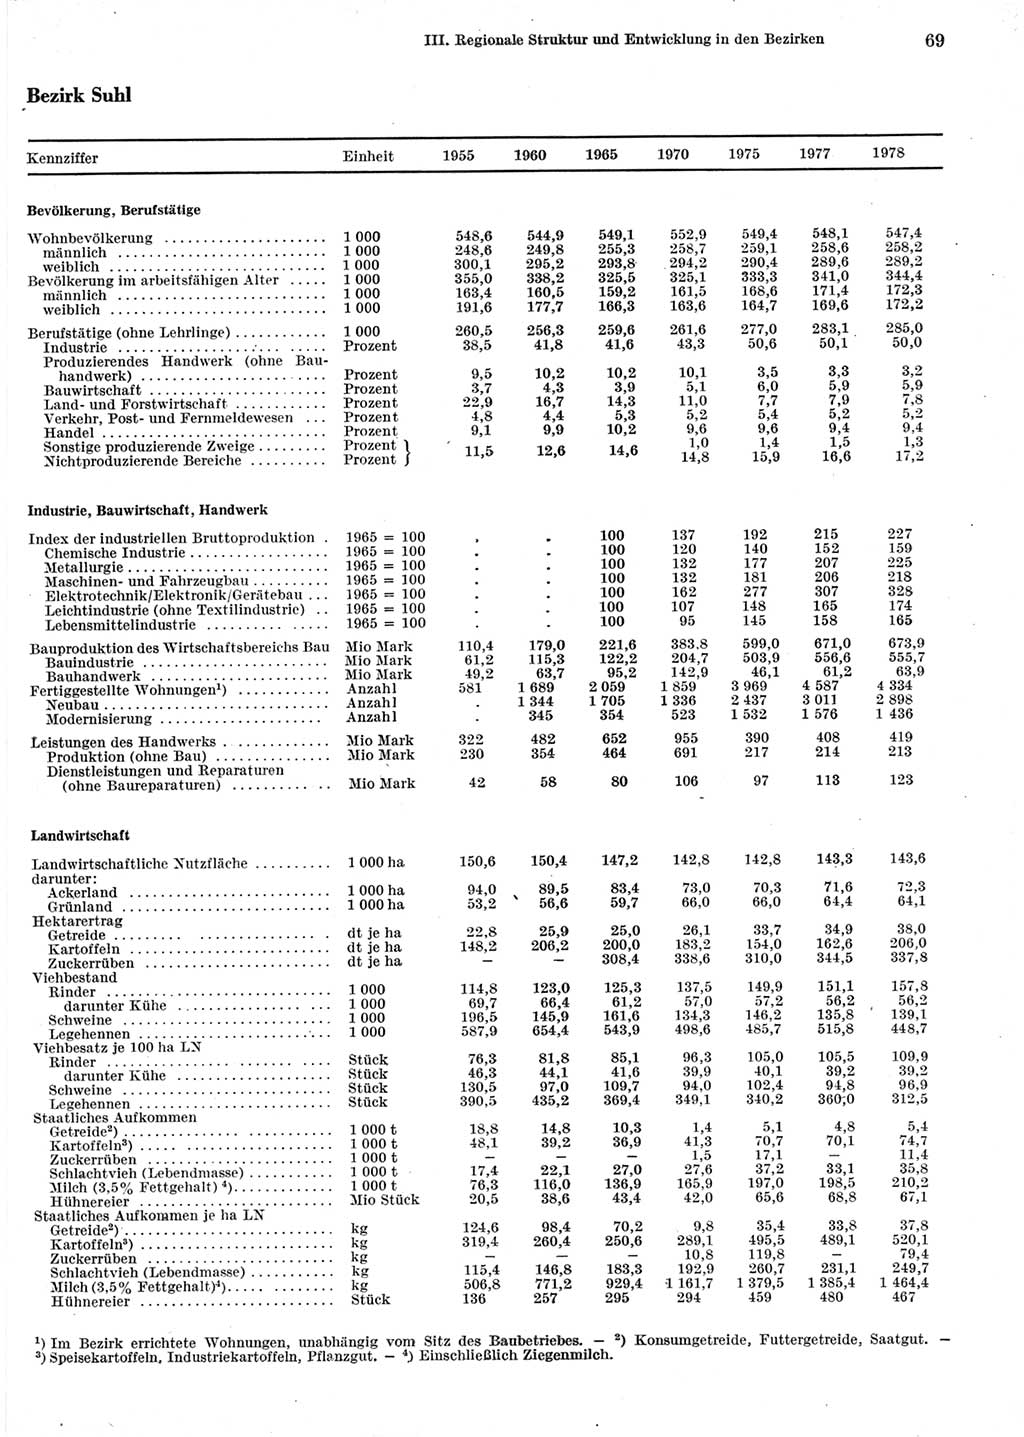 Statistisches Jahrbuch der Deutschen Demokratischen Republik (DDR) 1979, Seite 69 (Stat. Jb. DDR 1979, S. 69)